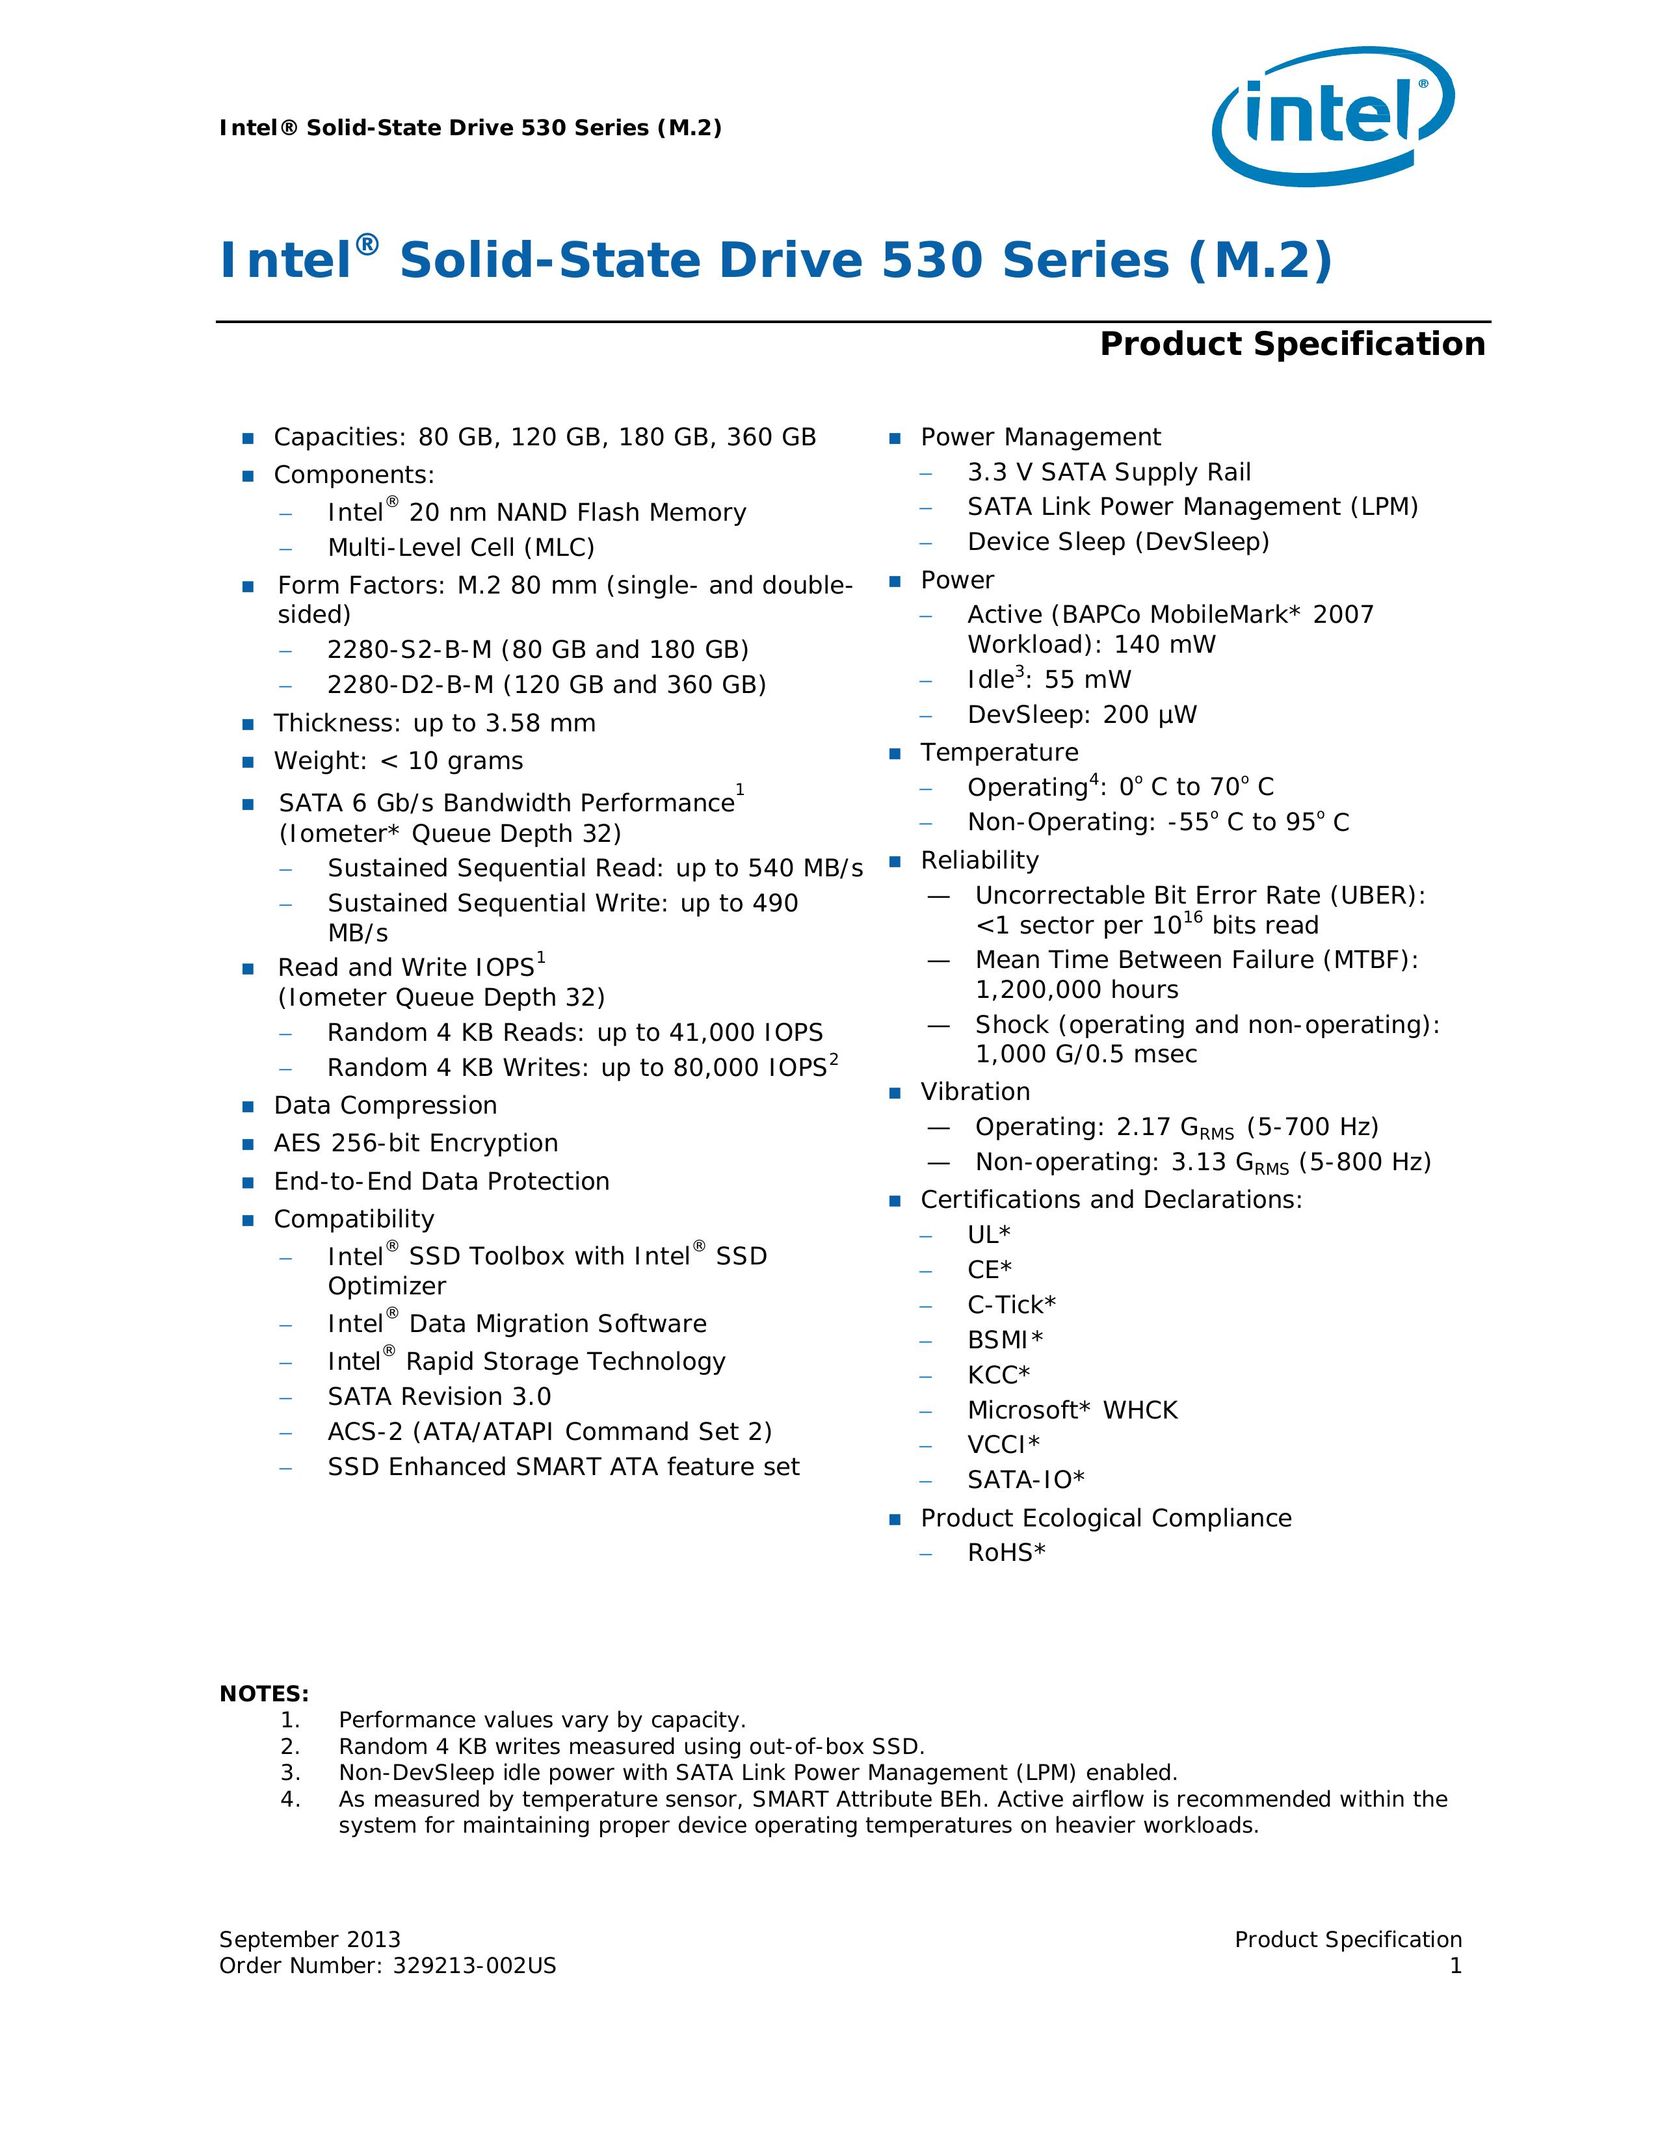 Intel SSDSCKGW080A4 Computer Drive User Manual